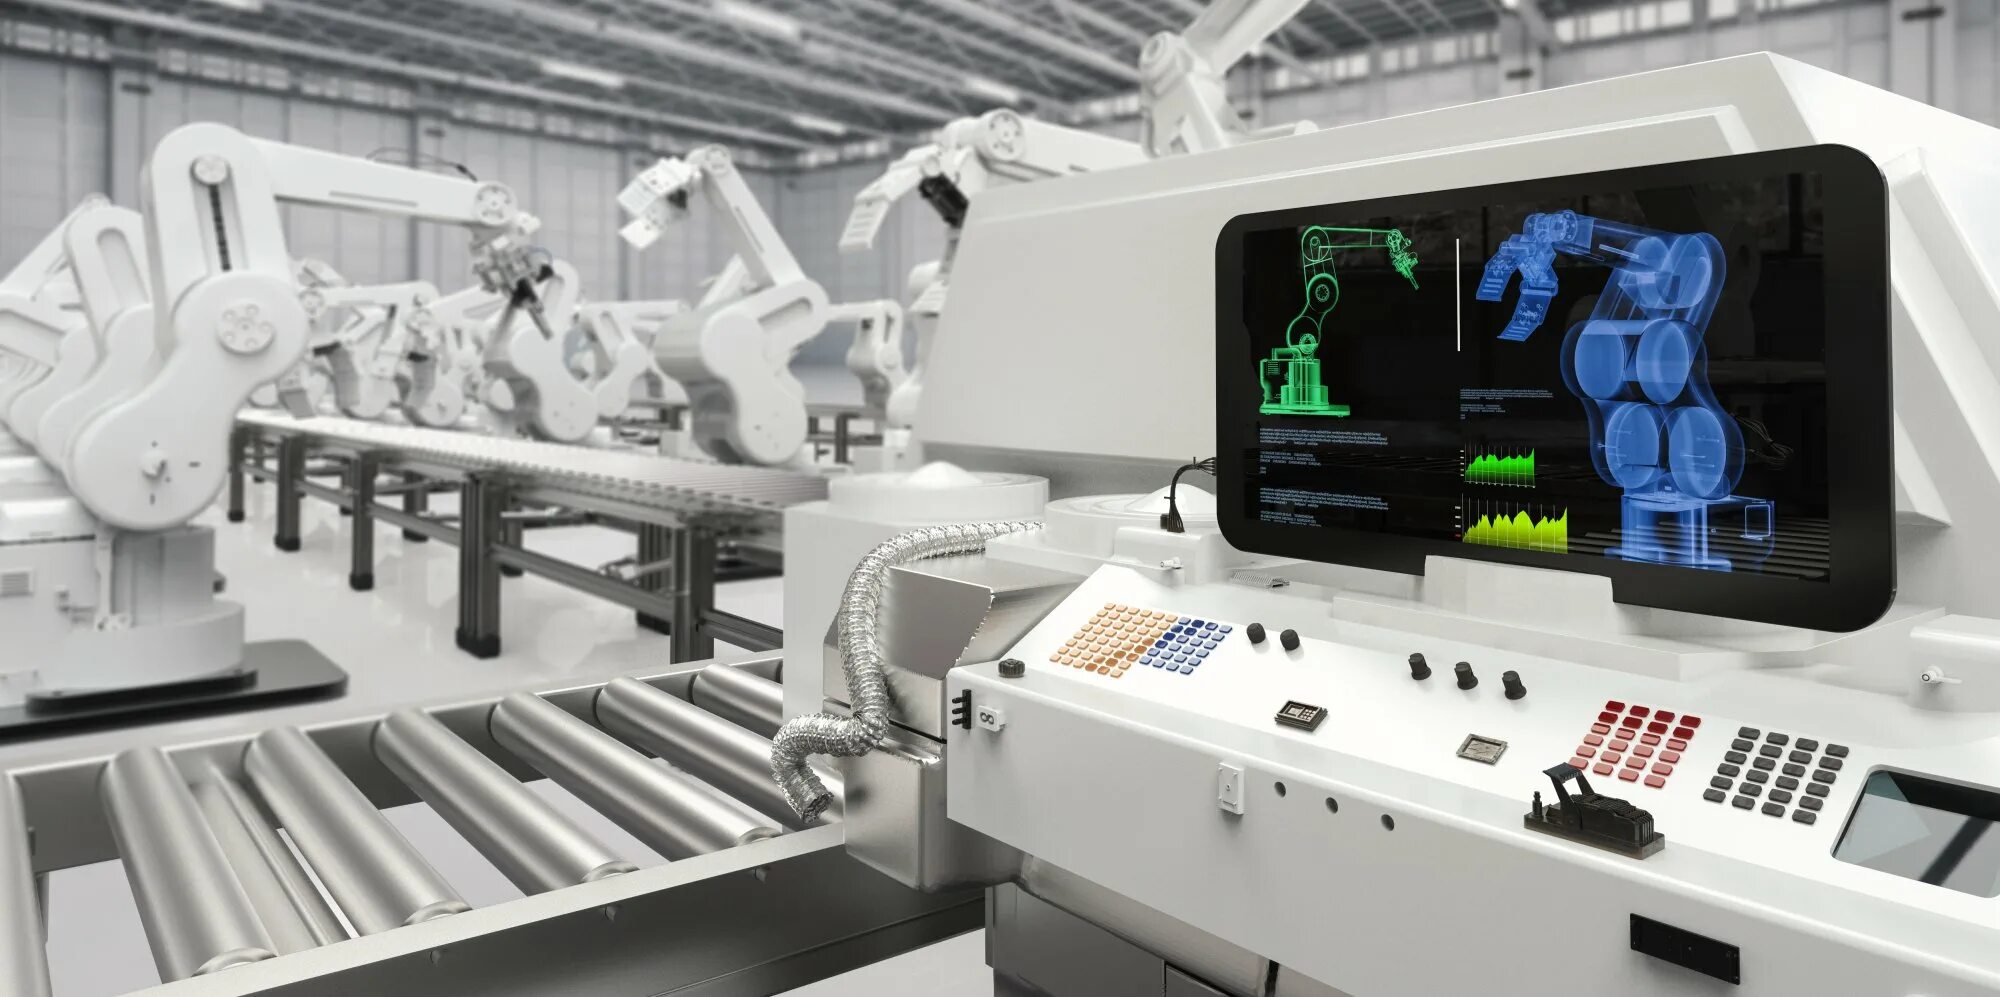 Новейшее современное оборудование. Автоматизация и роботизация производства. Завод будущего. Высокотехнологичное оборудование. Искусственный интеллект в промышленности.